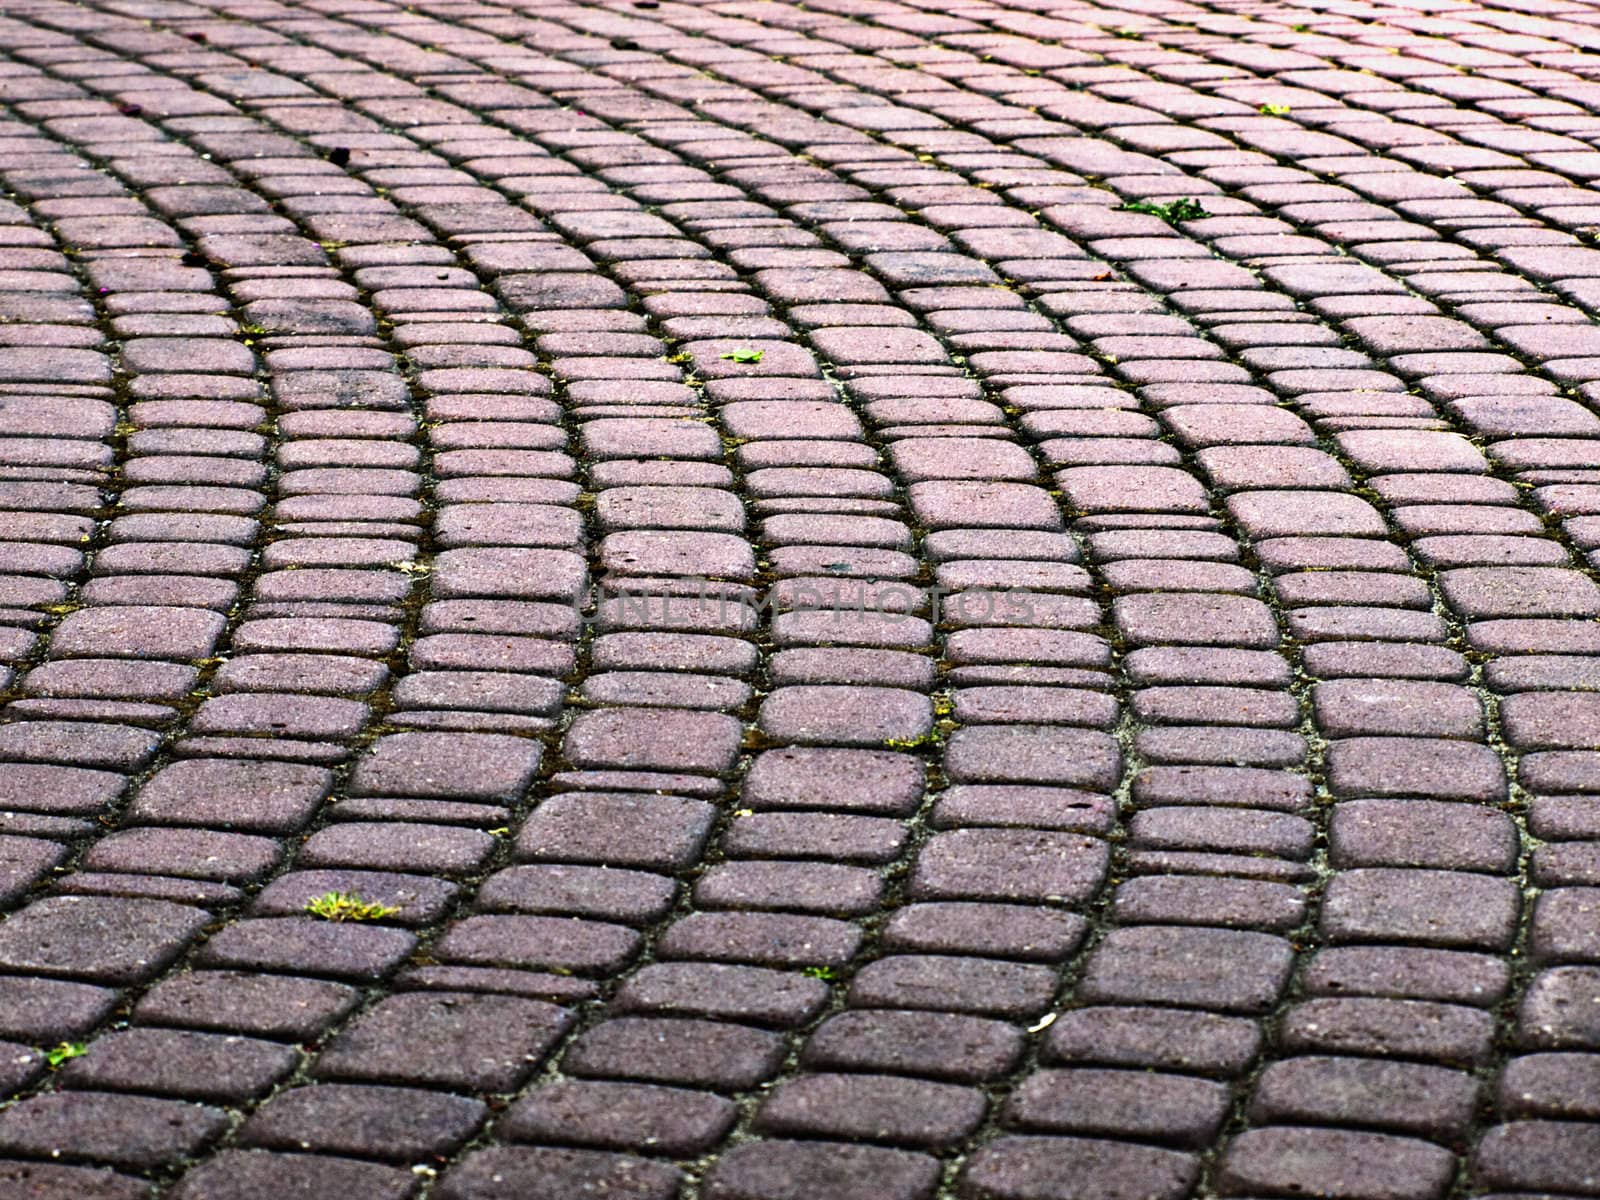 Brick Sidewalk by watamyr